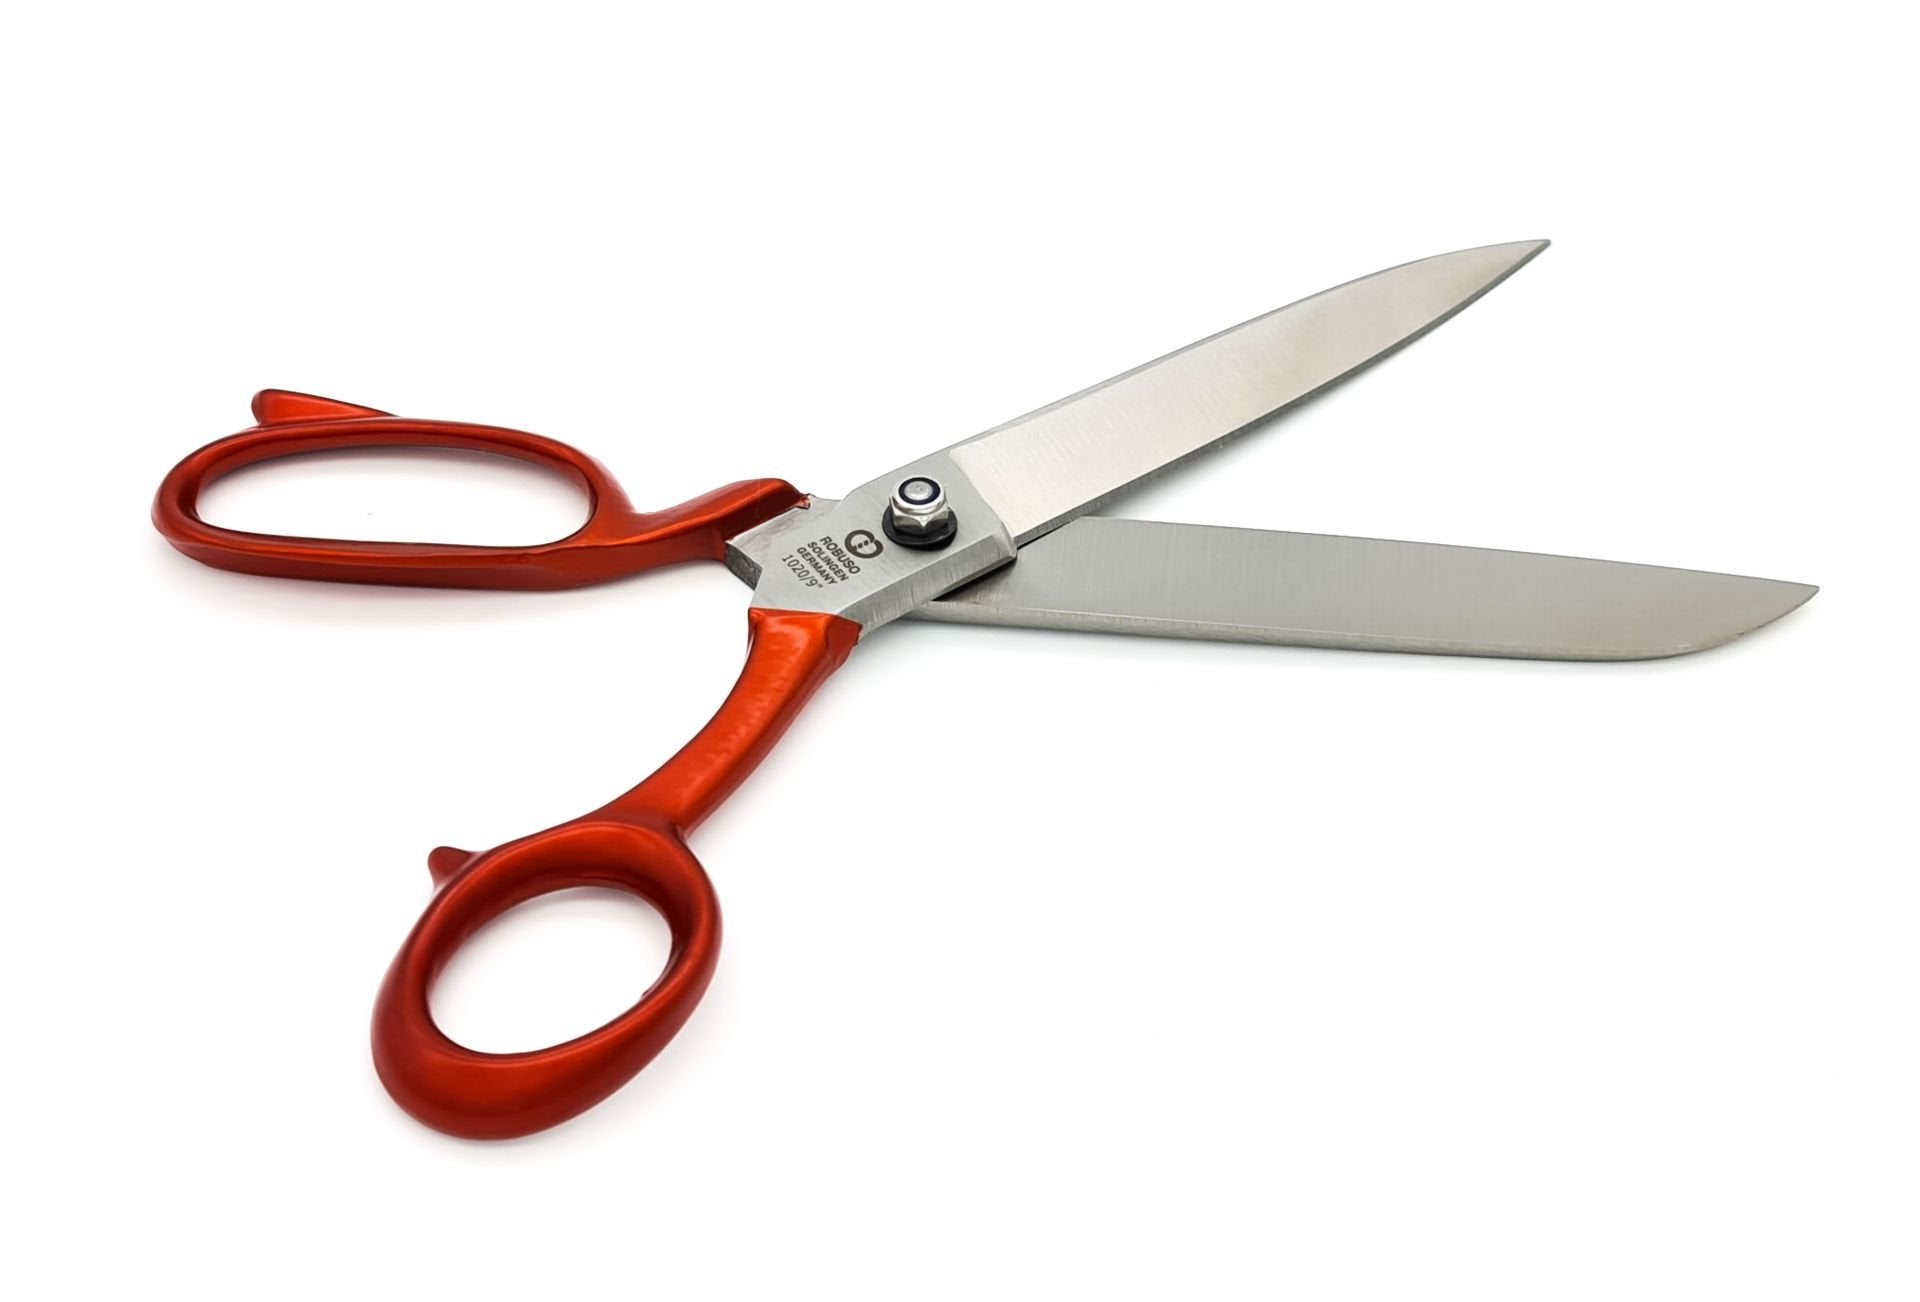 Tailor scissors, 9" / 23.5 cm